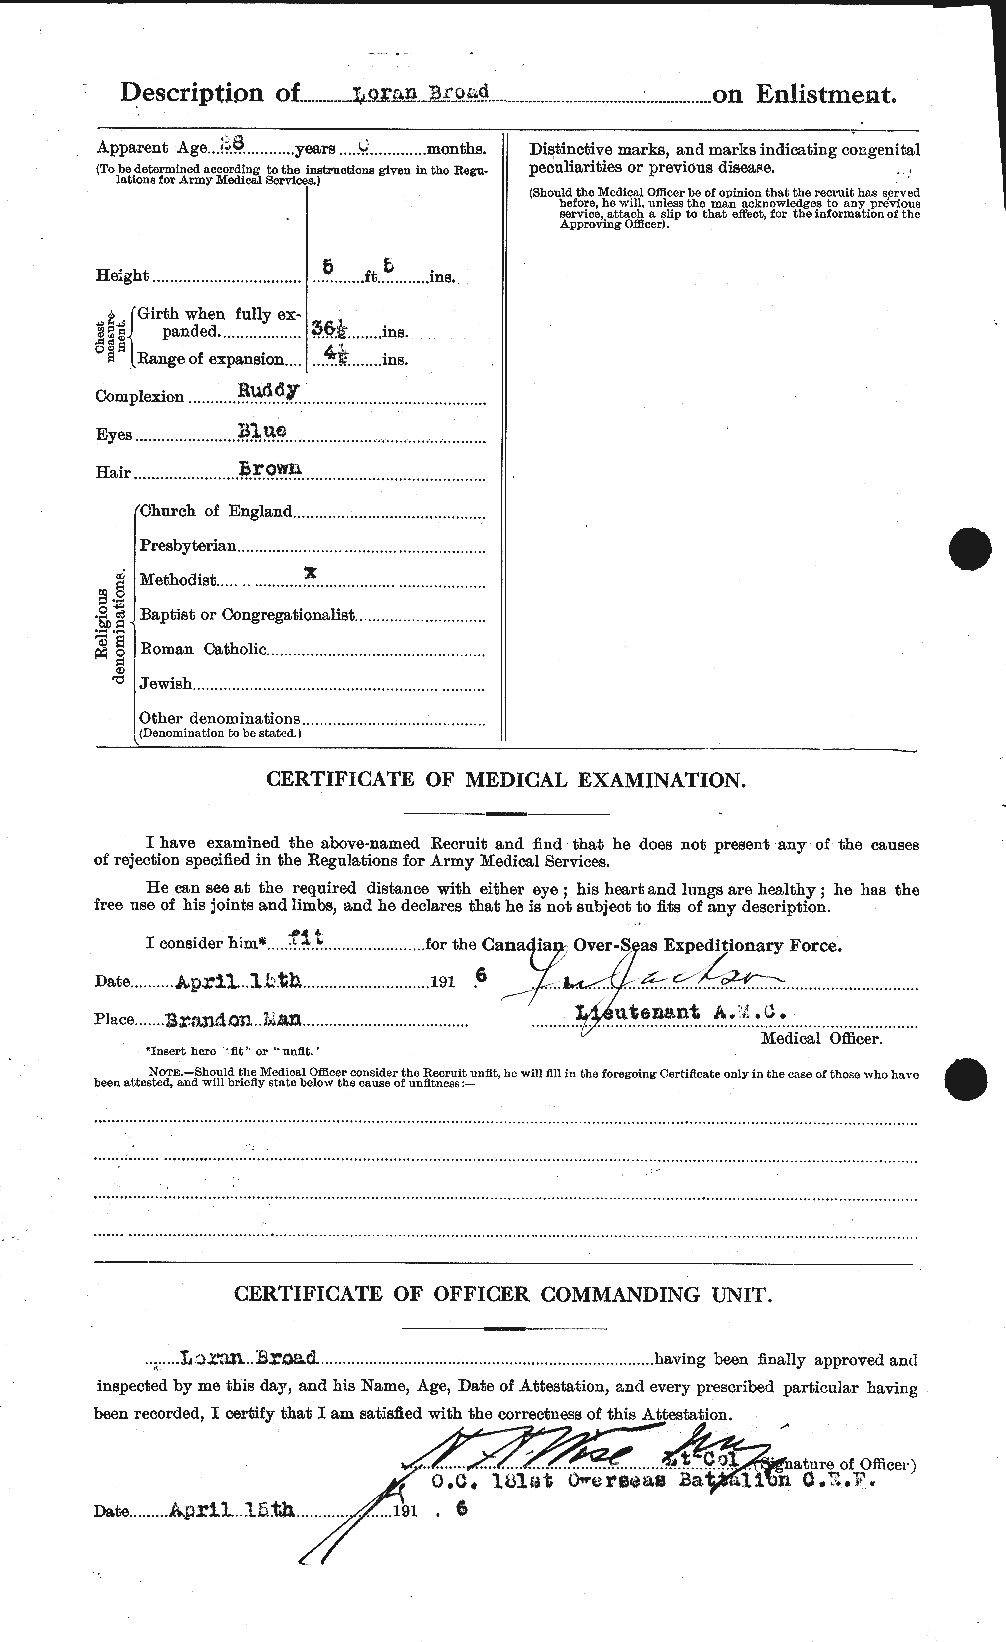 Dossiers du Personnel de la Première Guerre mondiale - CEC 262914b